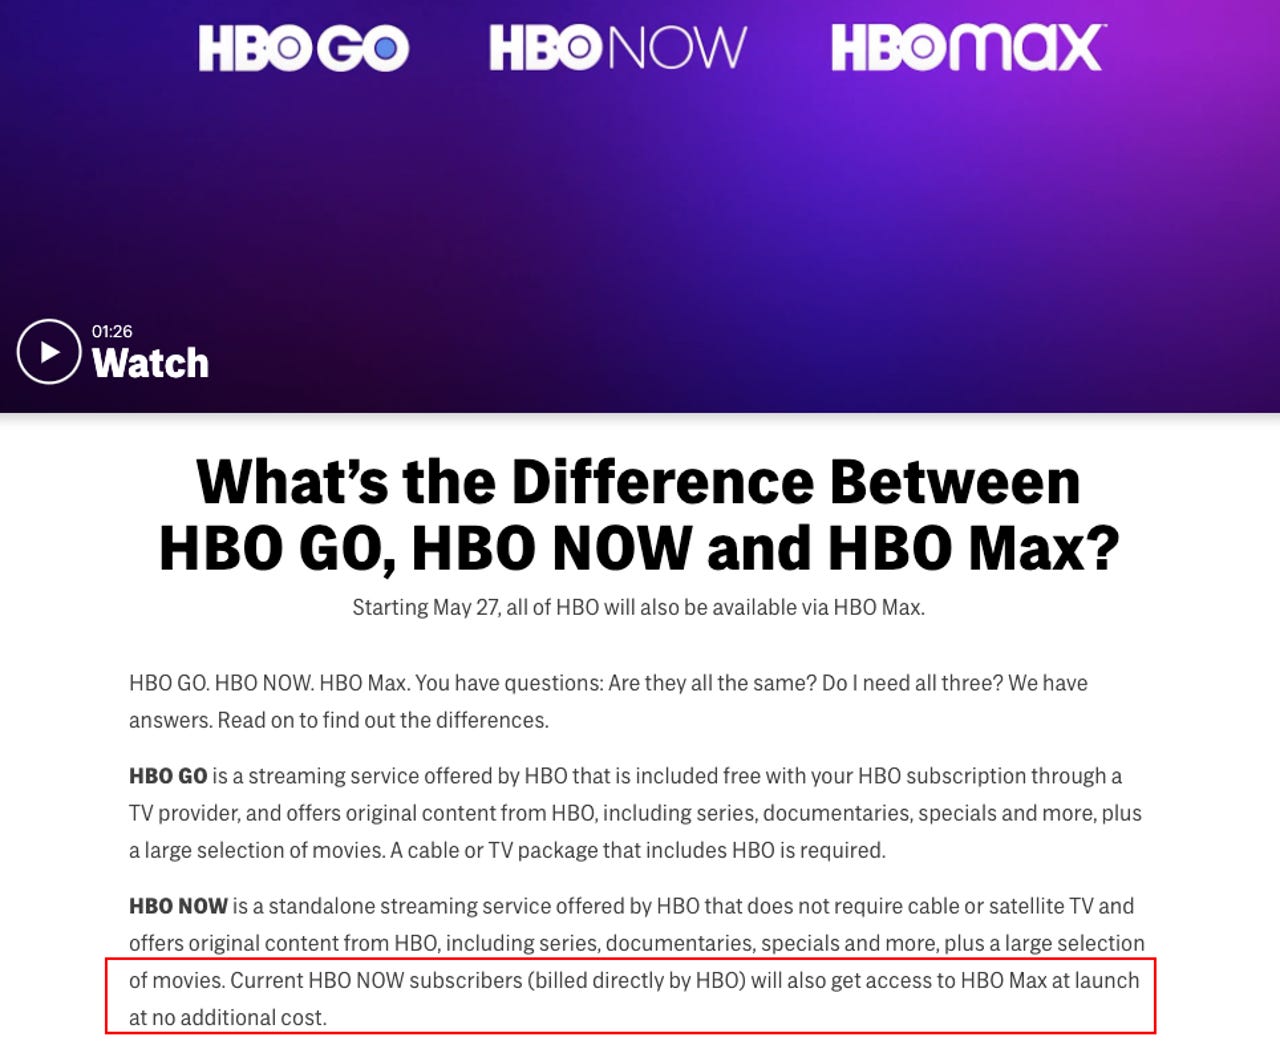 HBO Max: tudo sobre o novo serviço de streaming